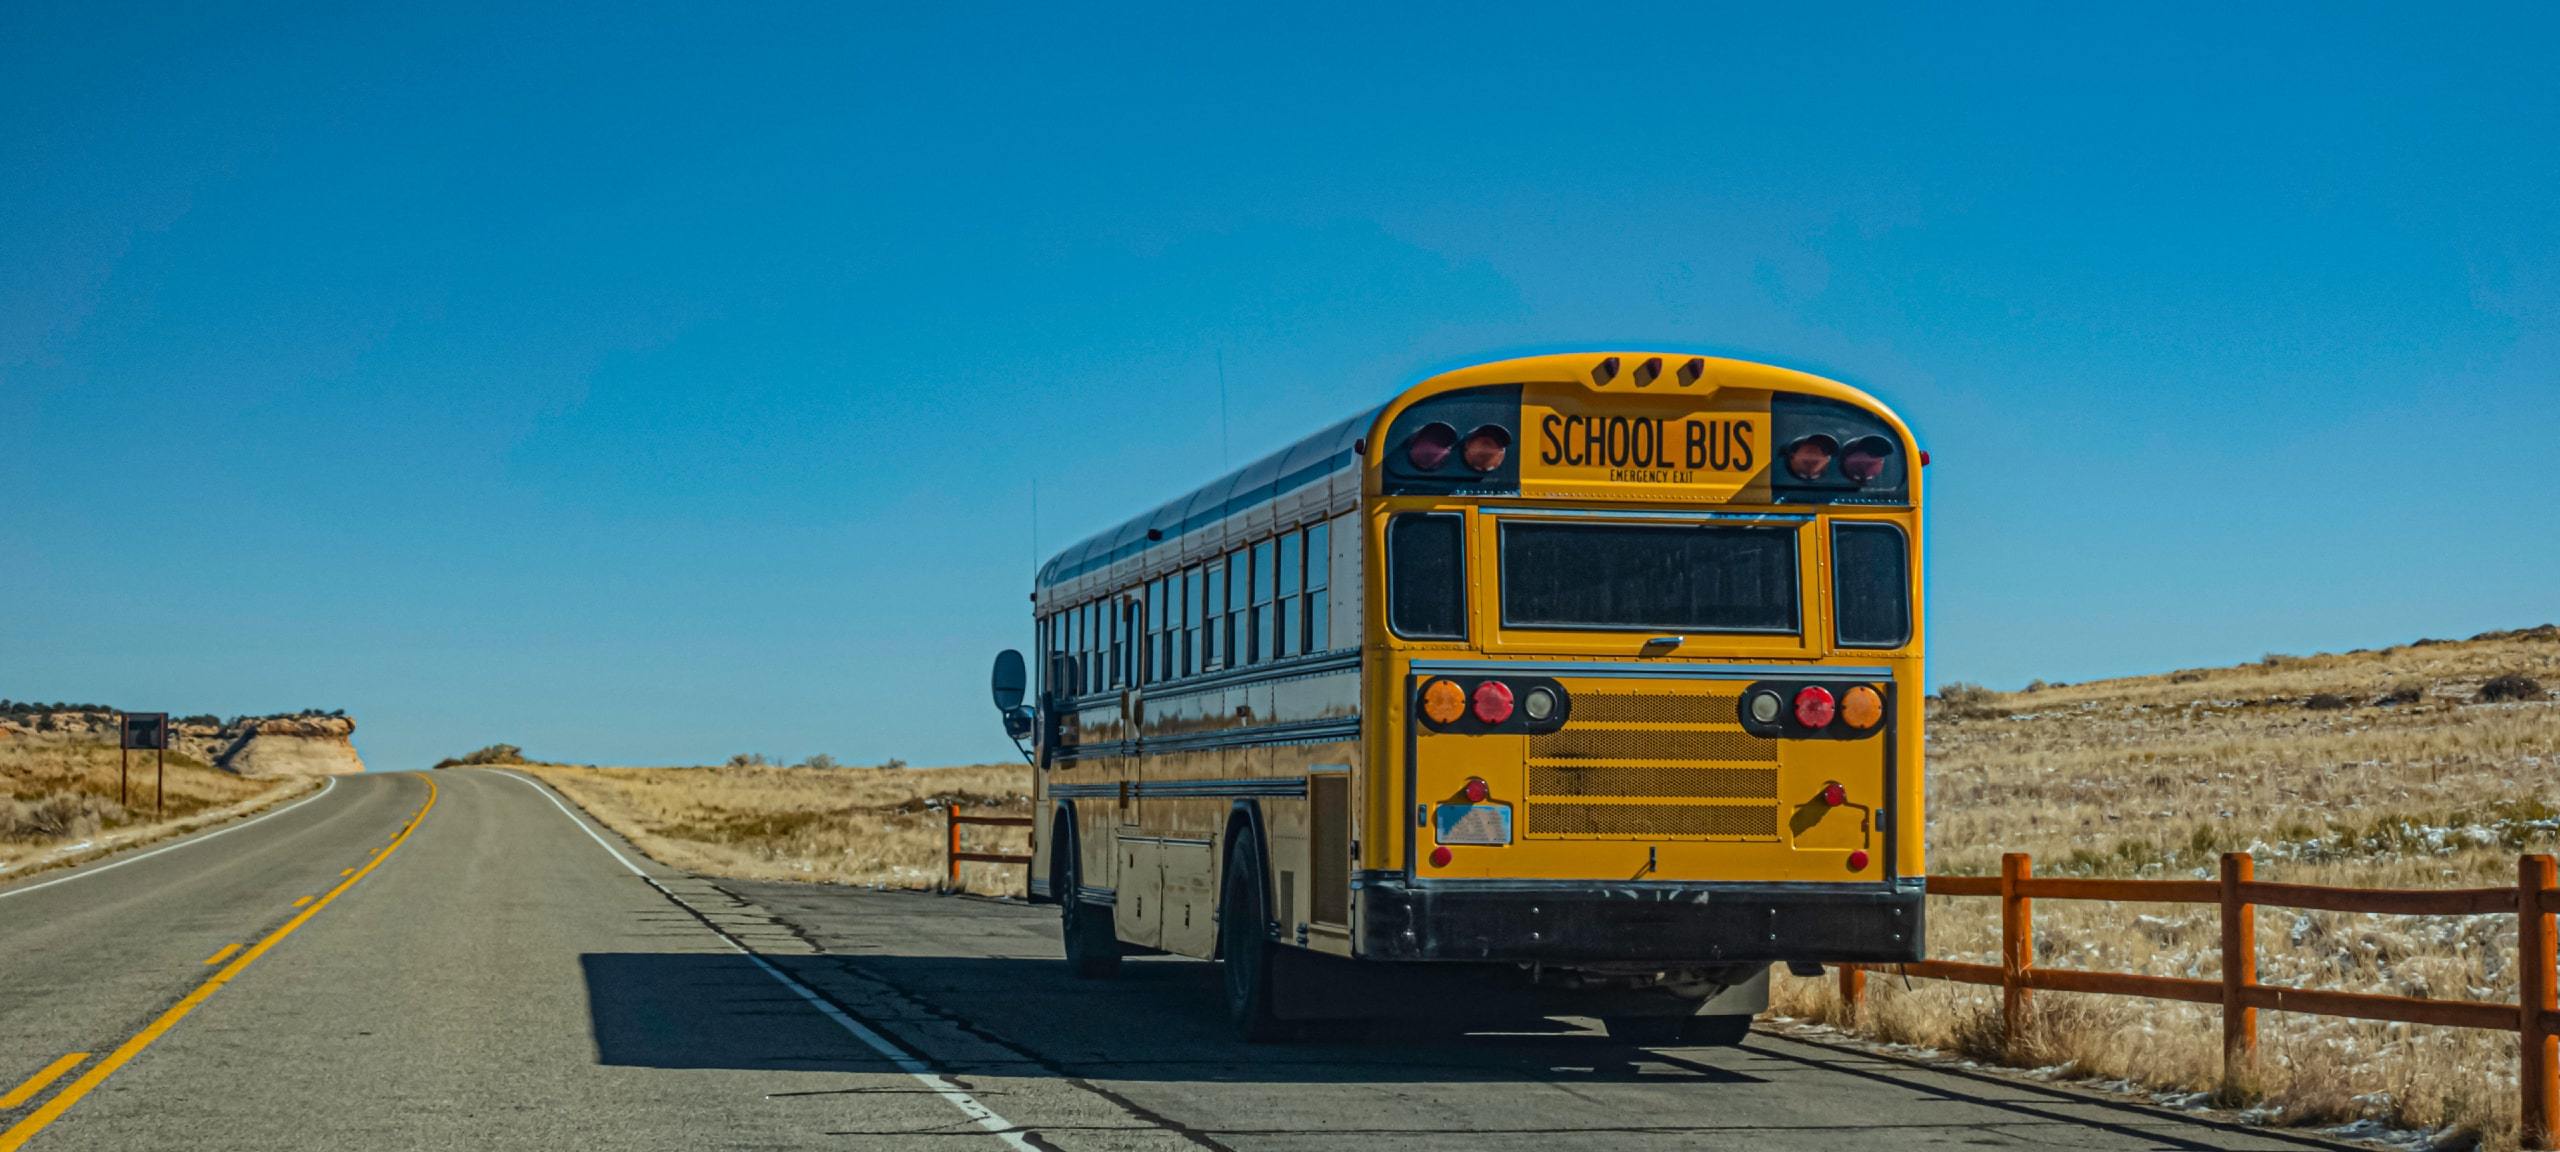 School bus on Utah road with blue sky